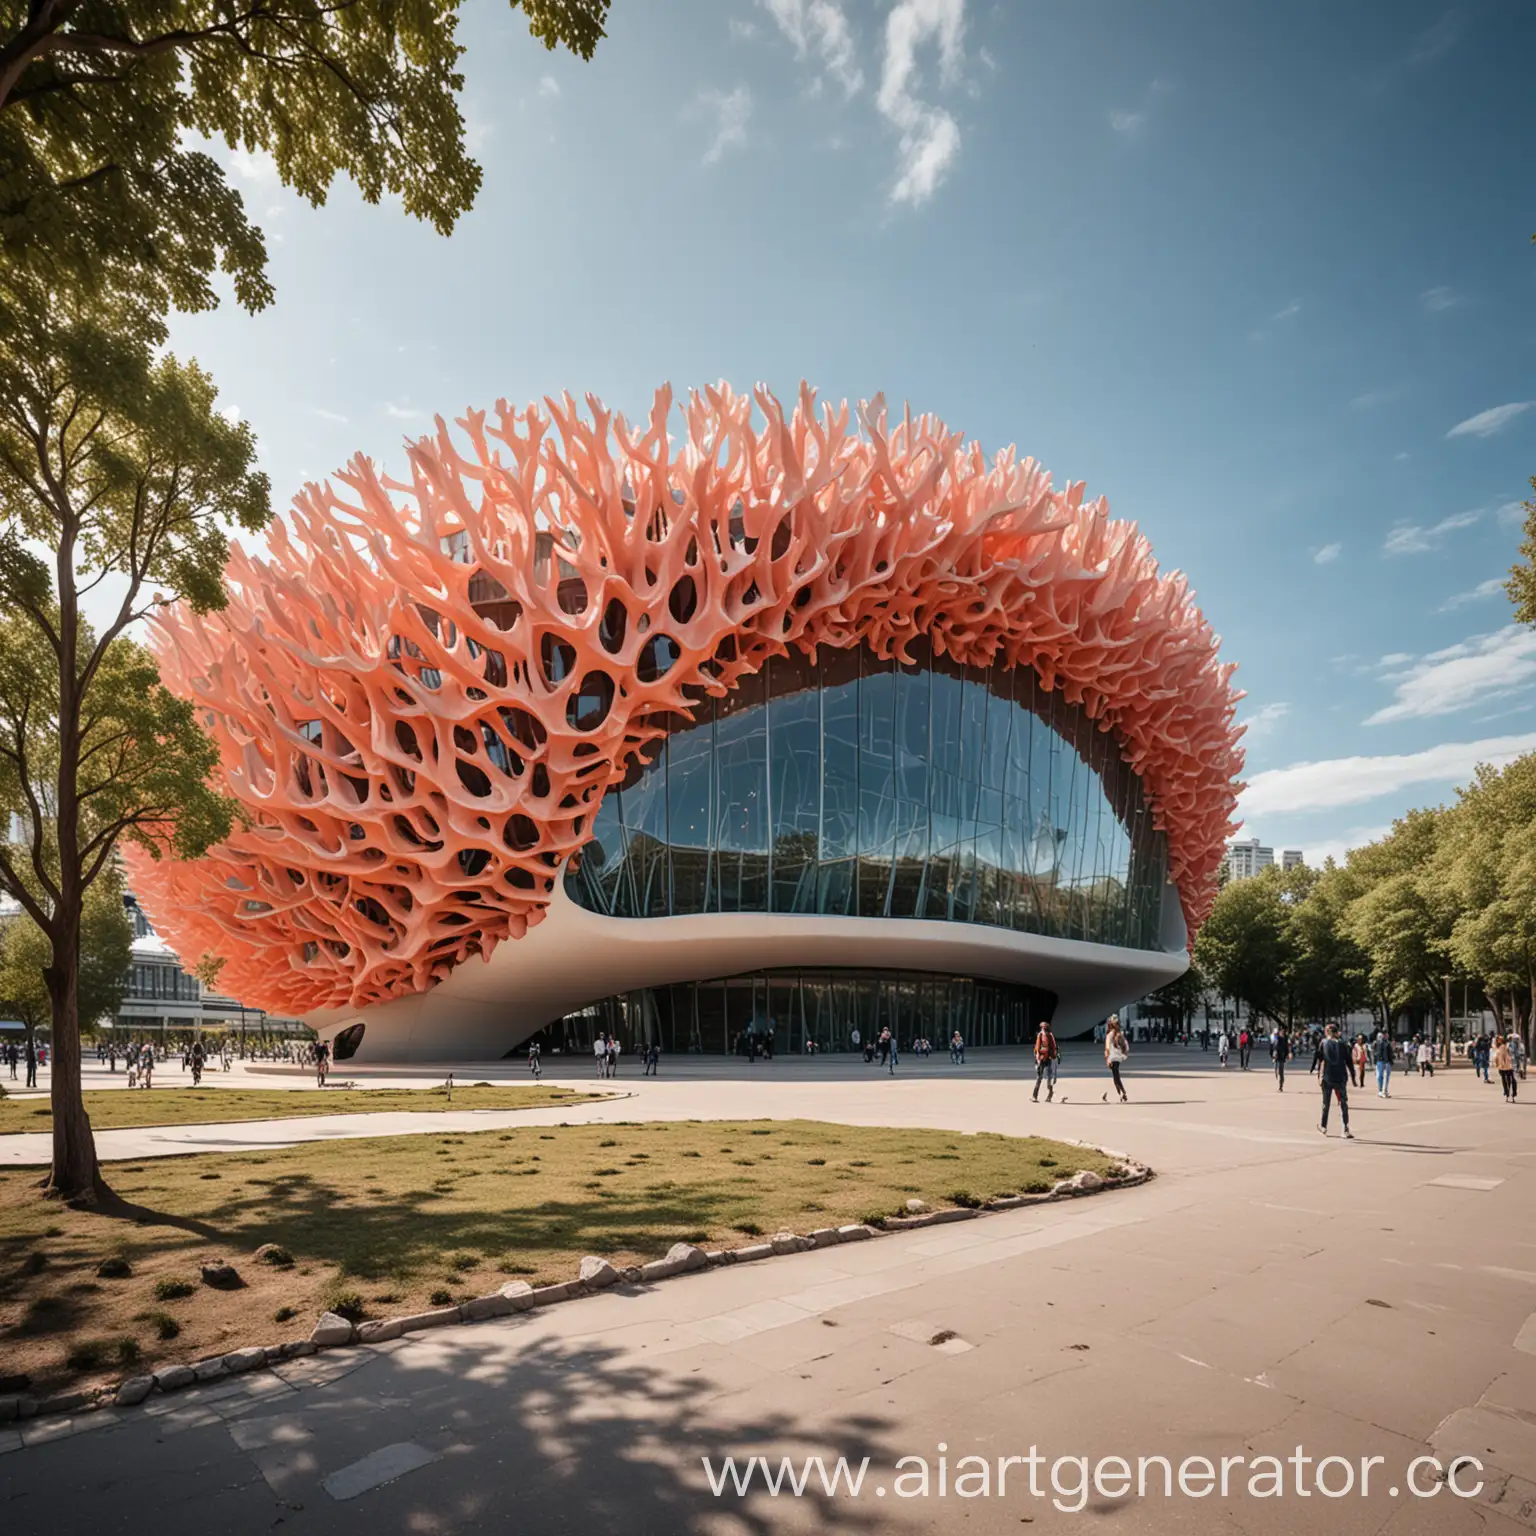 футуристичное здание концертного зала в виде кораллов снаружи который стоит на улице в парке
